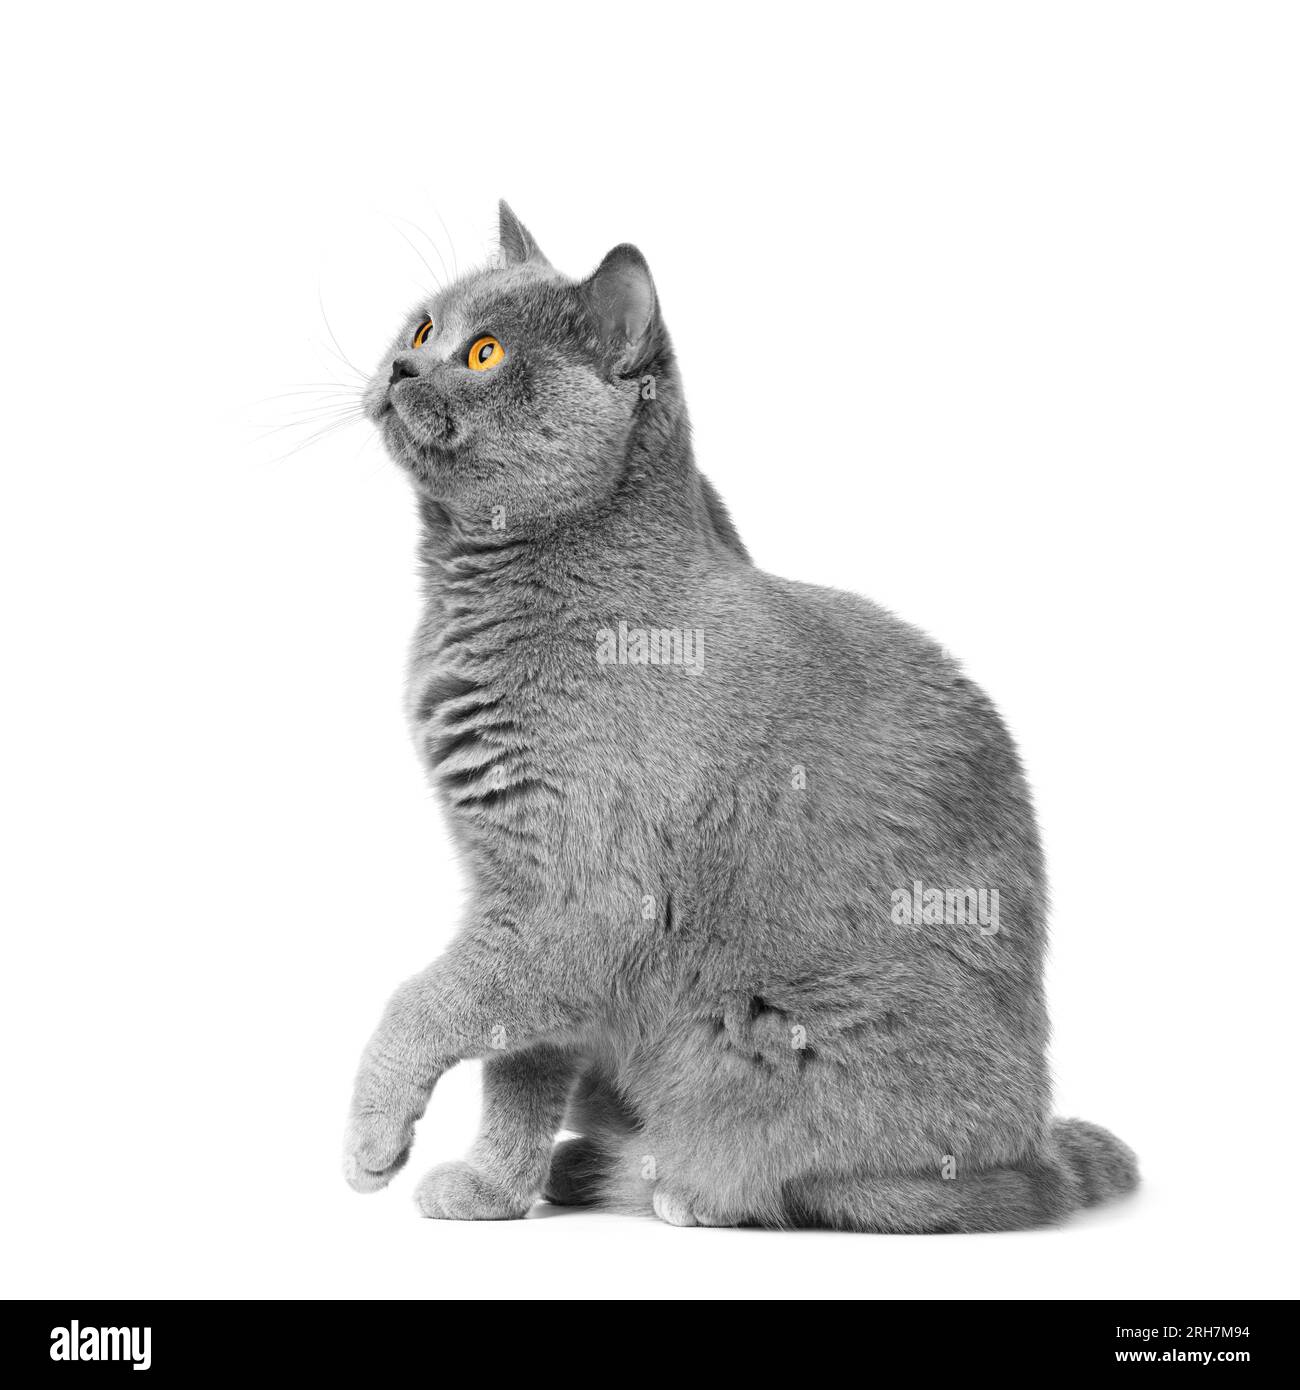 Chat bleu shorthair britannique assis sur un fond blanc, patte relevée. Bannière, publicité de nourriture, friandises pour chats. Banque D'Images